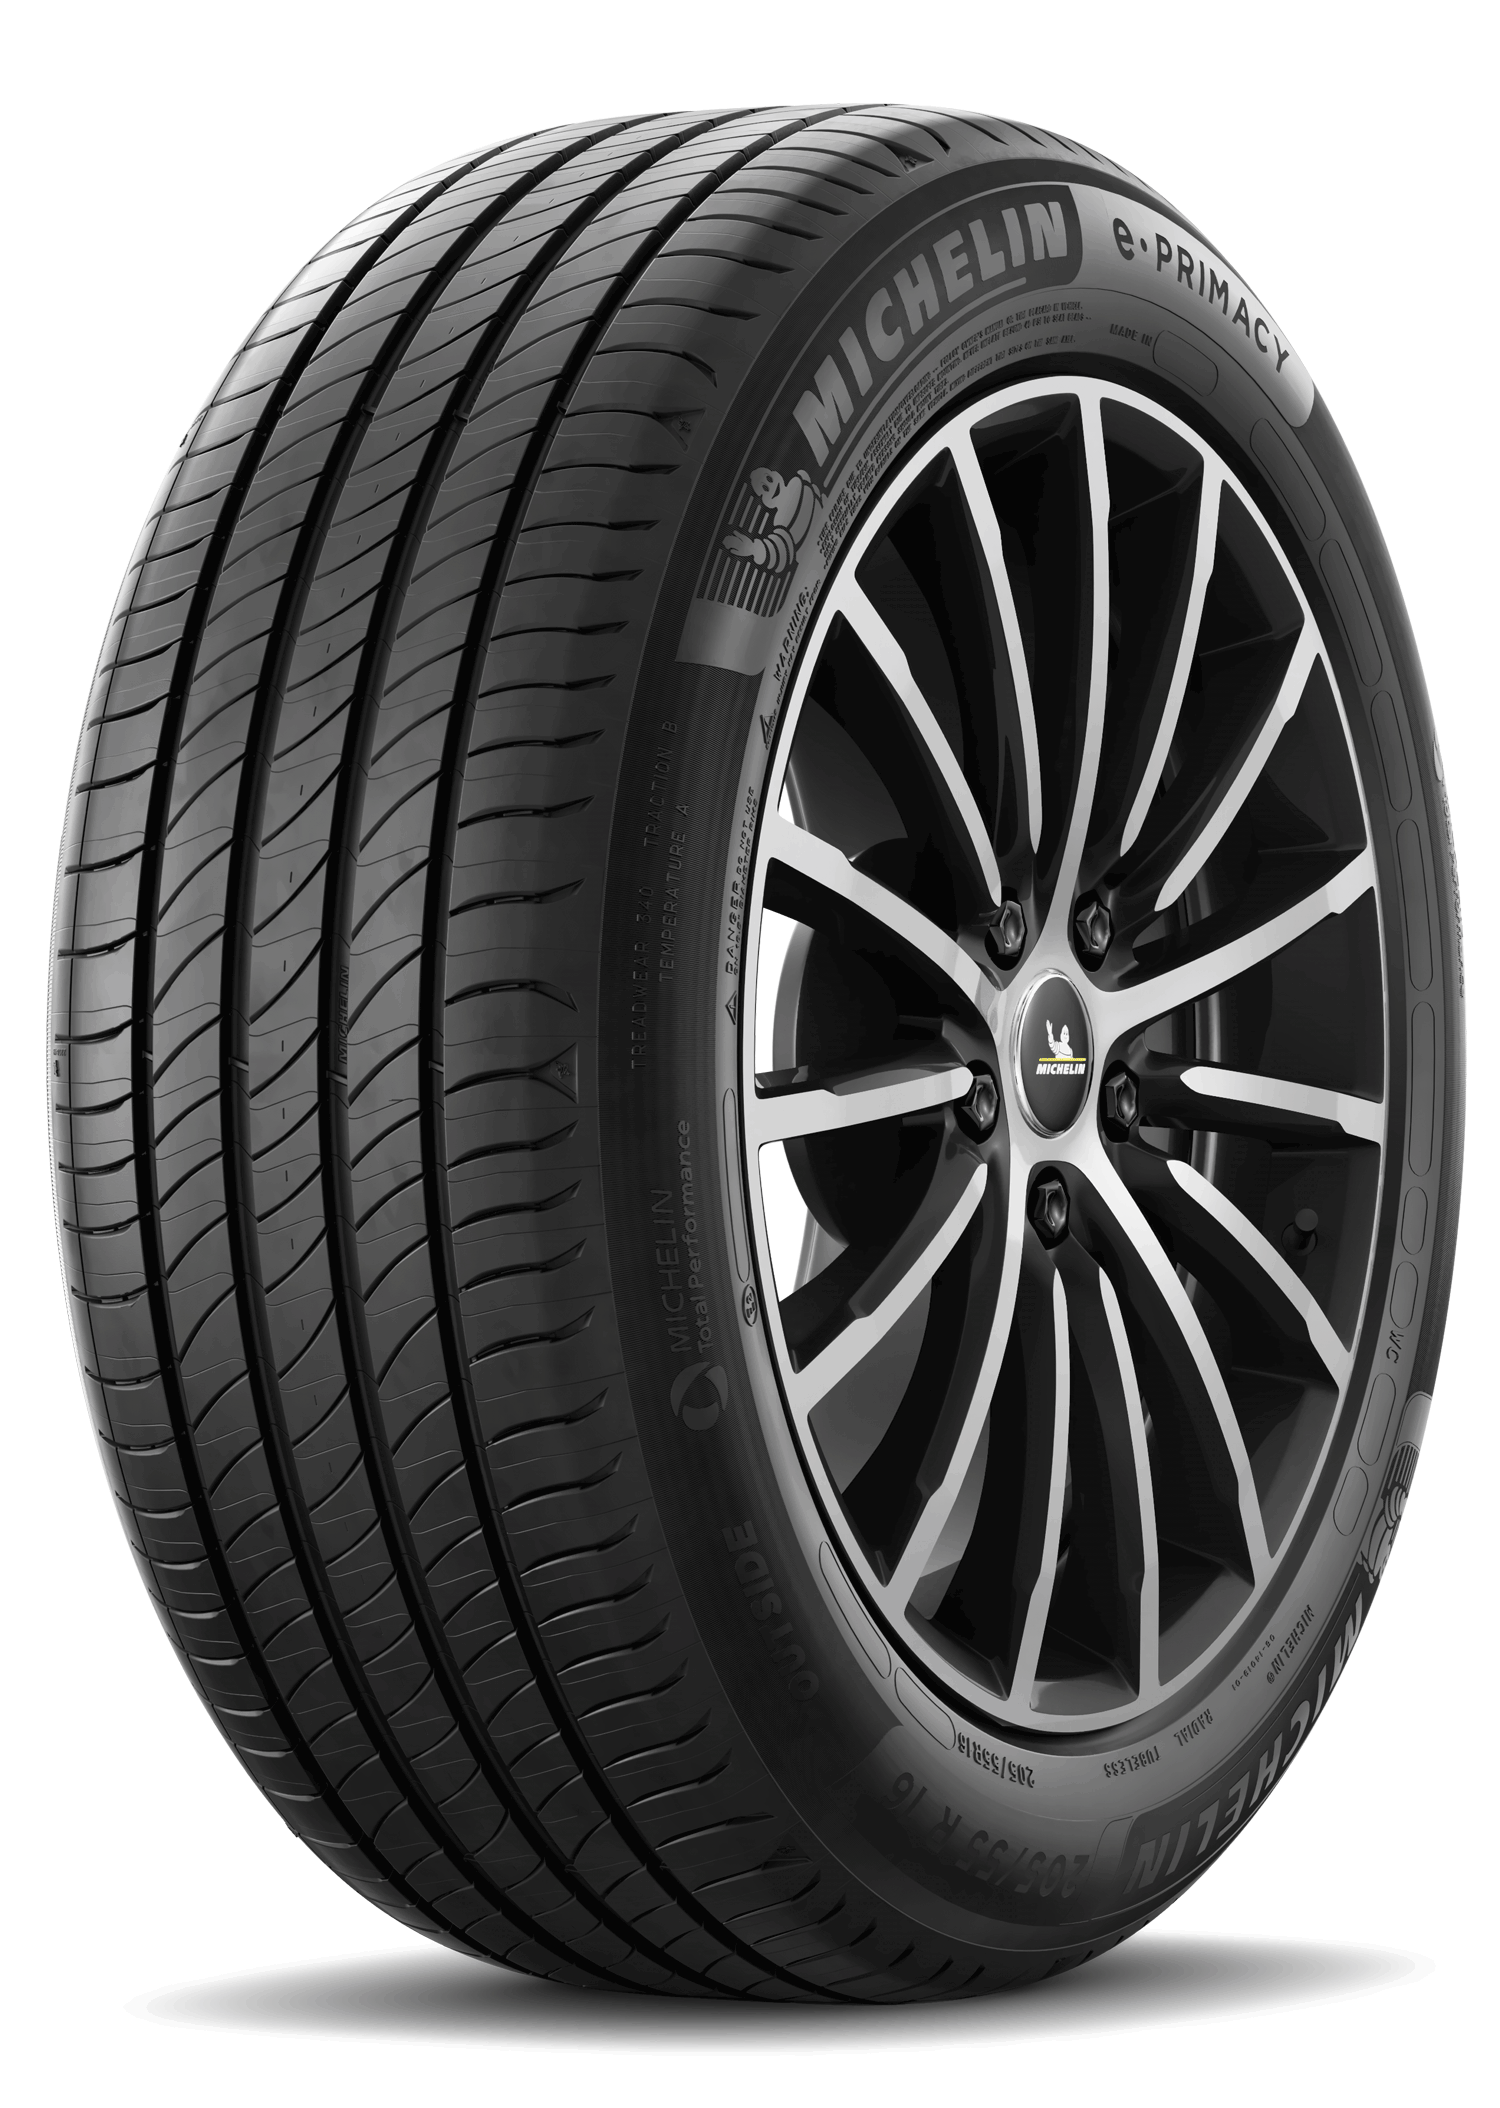 Gomme Nuove Michelin 235/60 R17 102V E PRIMACY pneumatici nuovi Estivo